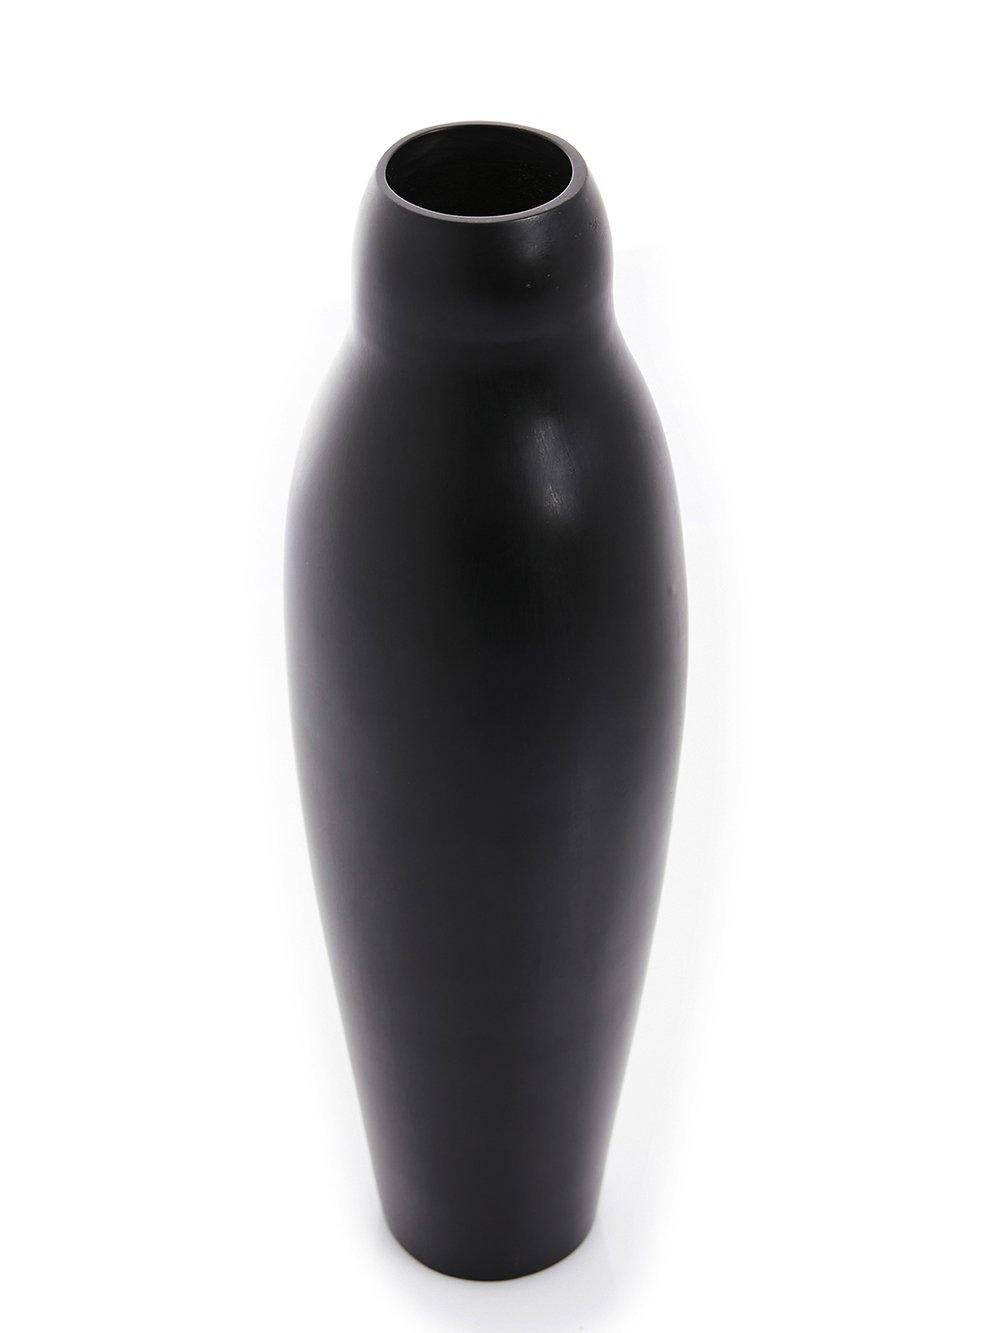 Vase en bronze de Rick Owens
2019
Dimensions : L 11 x L 11 x H 36.7 cm
Matériaux : Bronze
Poids : 4.5 kg

Rick Owens est un créateur de mode et de mobilier originaire de Californie qui a développé un style unique qu'il qualifie de 